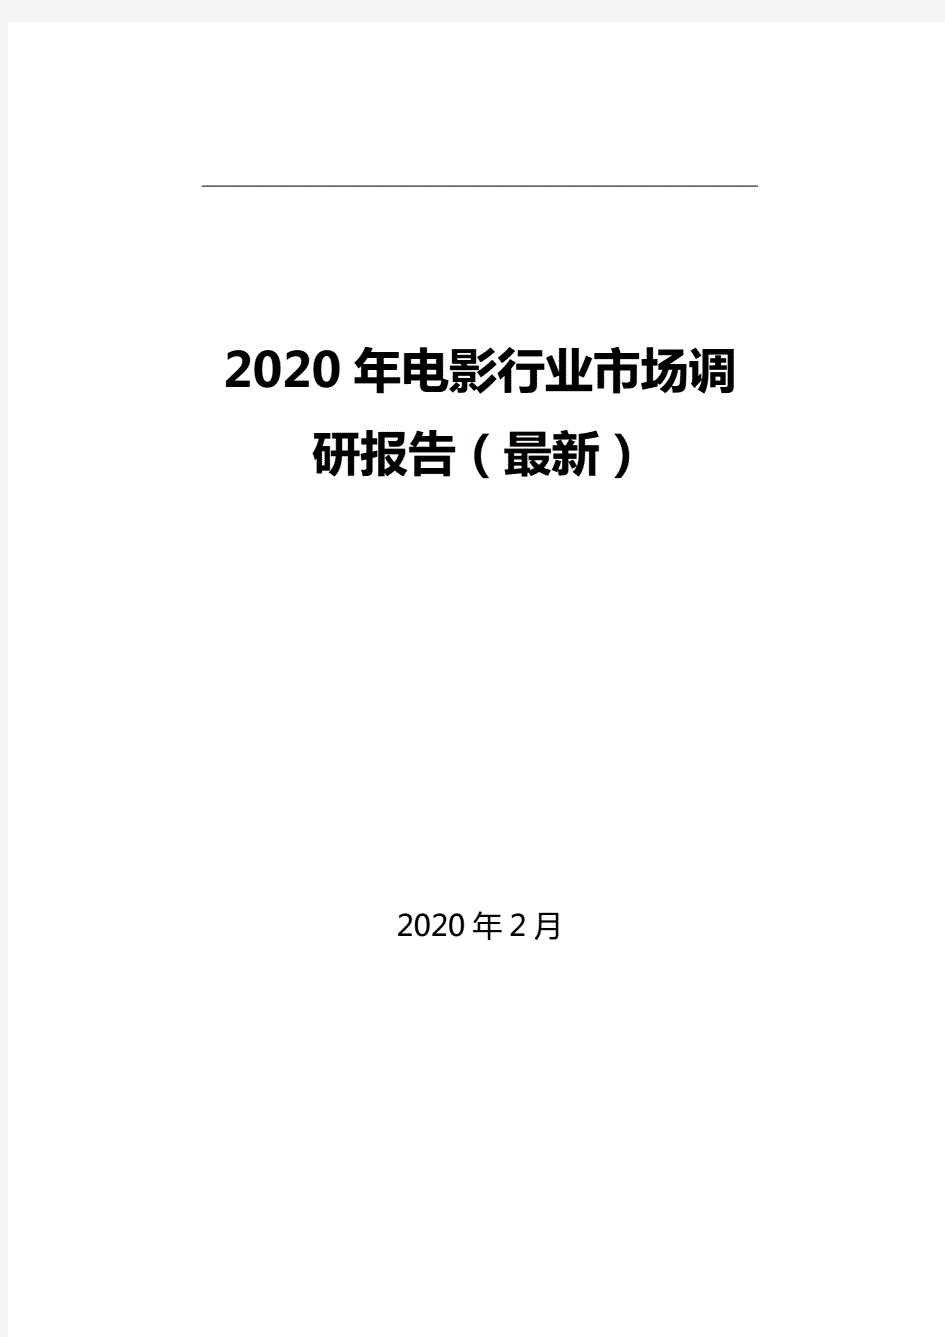 2020年电影行业市场调研报告(最新)